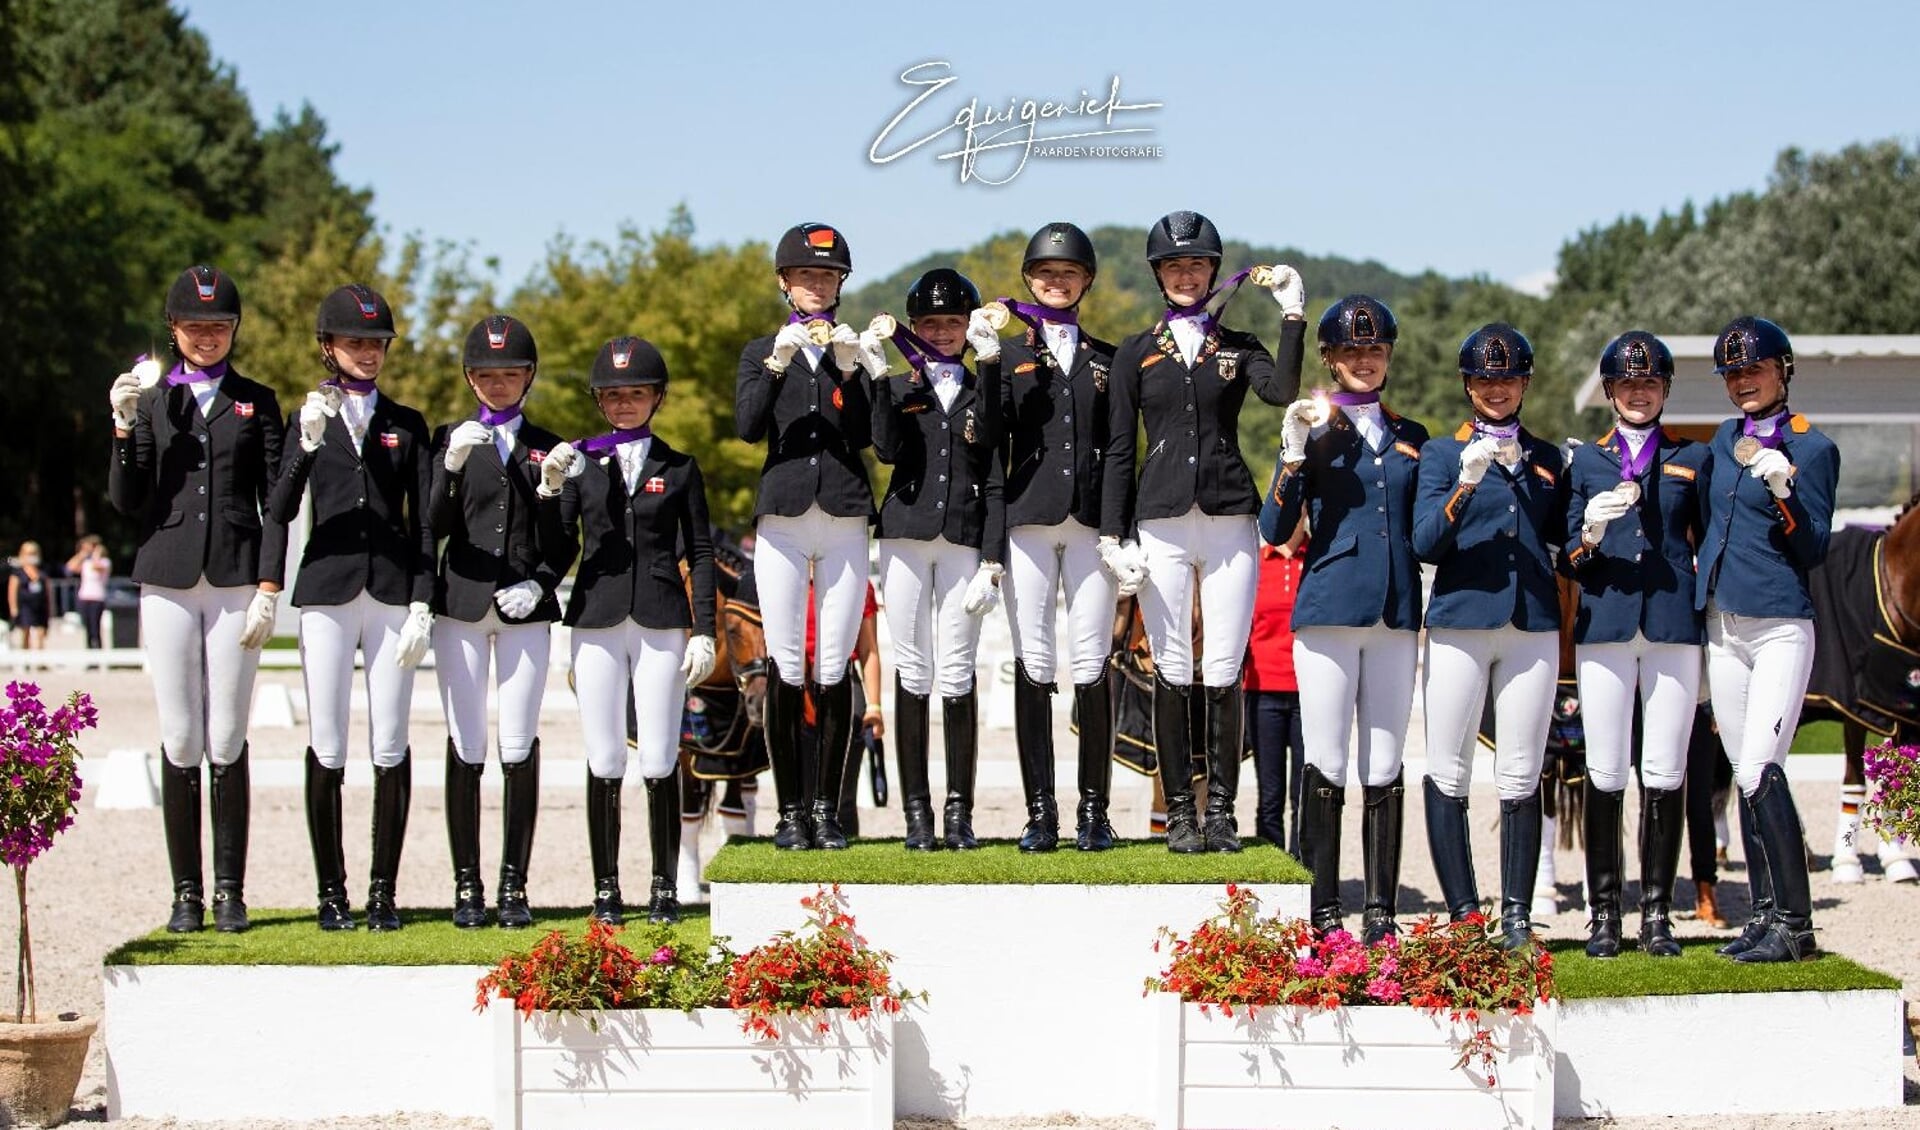 De ponyruiters brons in de landenwedstrijd foto Equigeniek